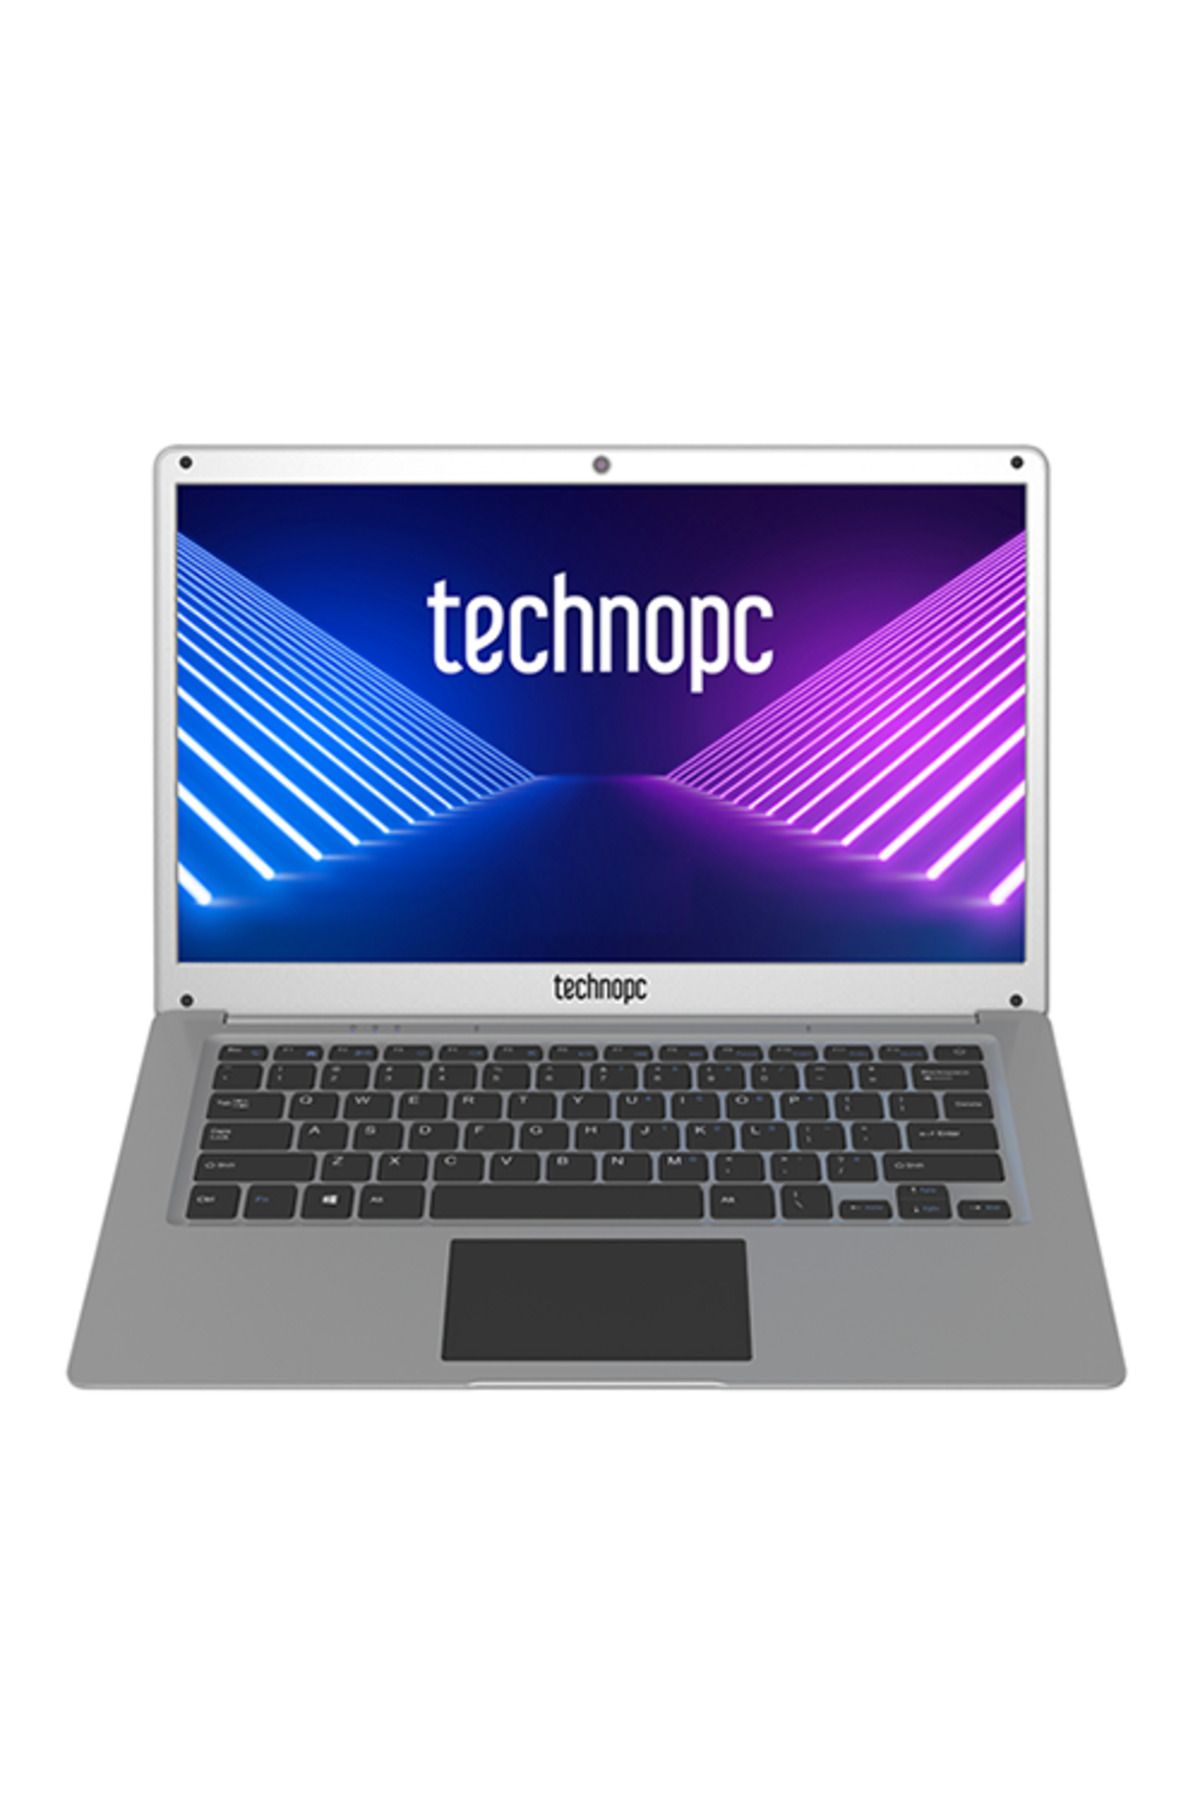 Technopc BlueEra Laptop N15 14.0" FHD Intel Celeron N3450 4GB DDR4 128GB SSD Freedos Notebook